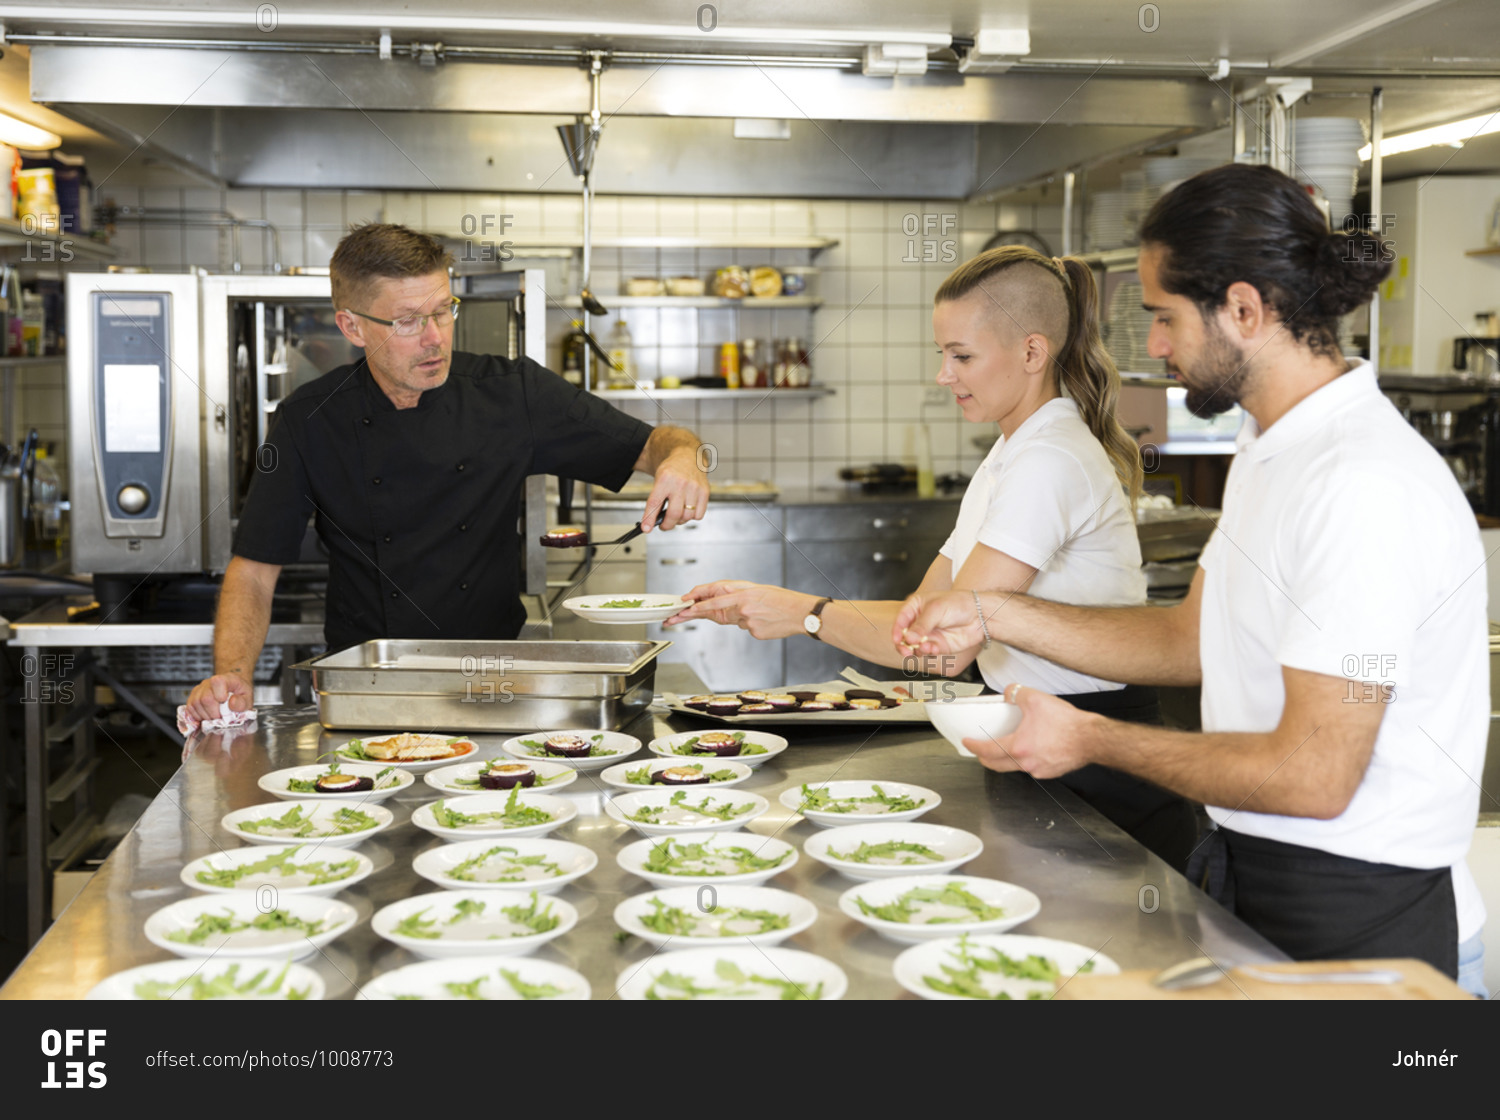 People working in restaurant kitchen